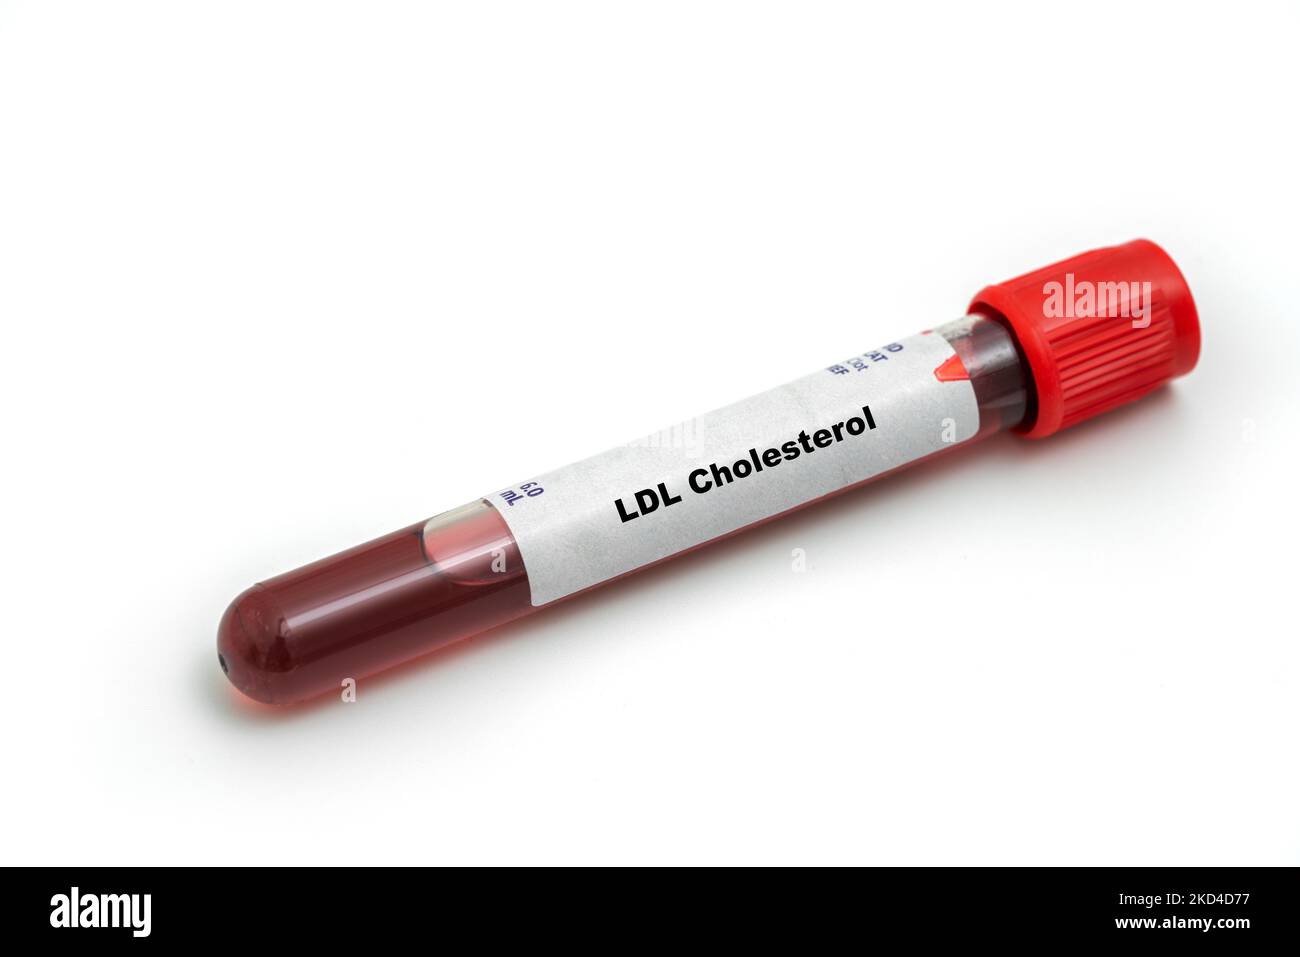 Cholestérol LDL, image conceptuelle Banque D'Images